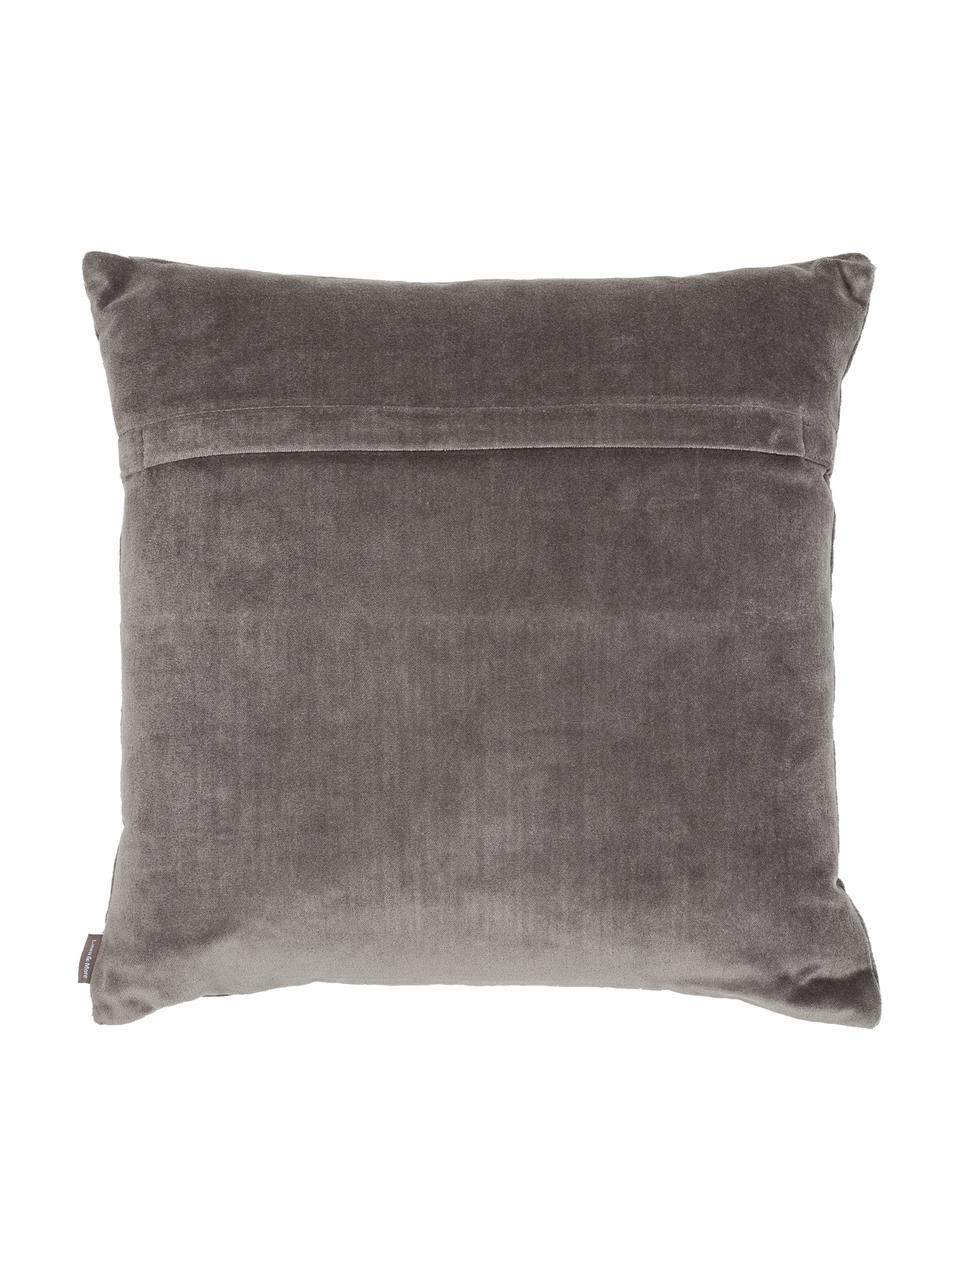 Cuscino in velluto ricamato Preston, Grigio, crema, Larg. 45 x Lung. 45 cm